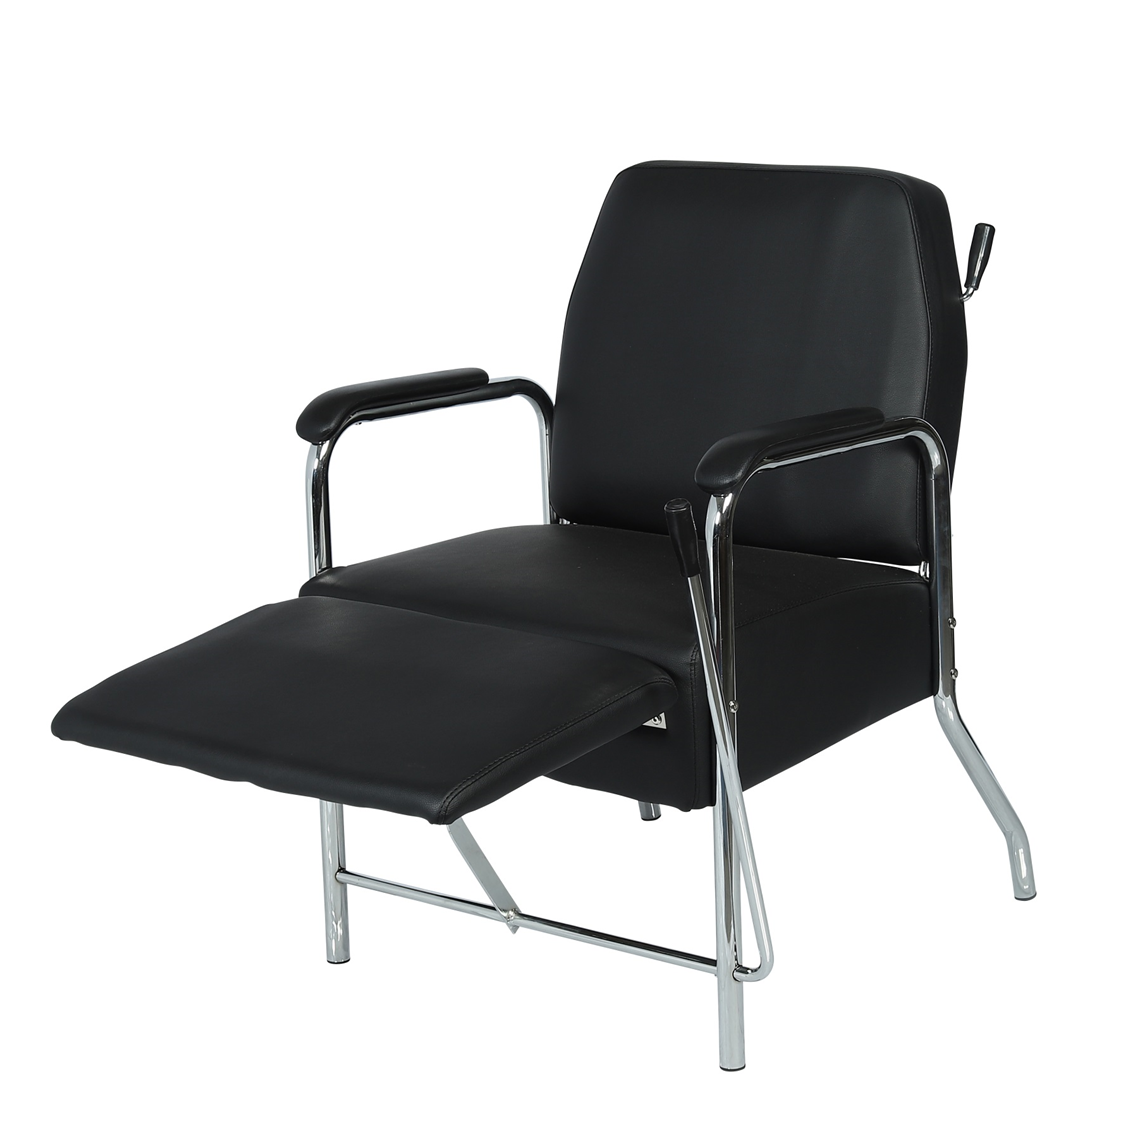 Carson Salon Shampoo Chair - Garfield Commercial Enterprises Salon Equipment Spa Furniture Barber Chair Luxury